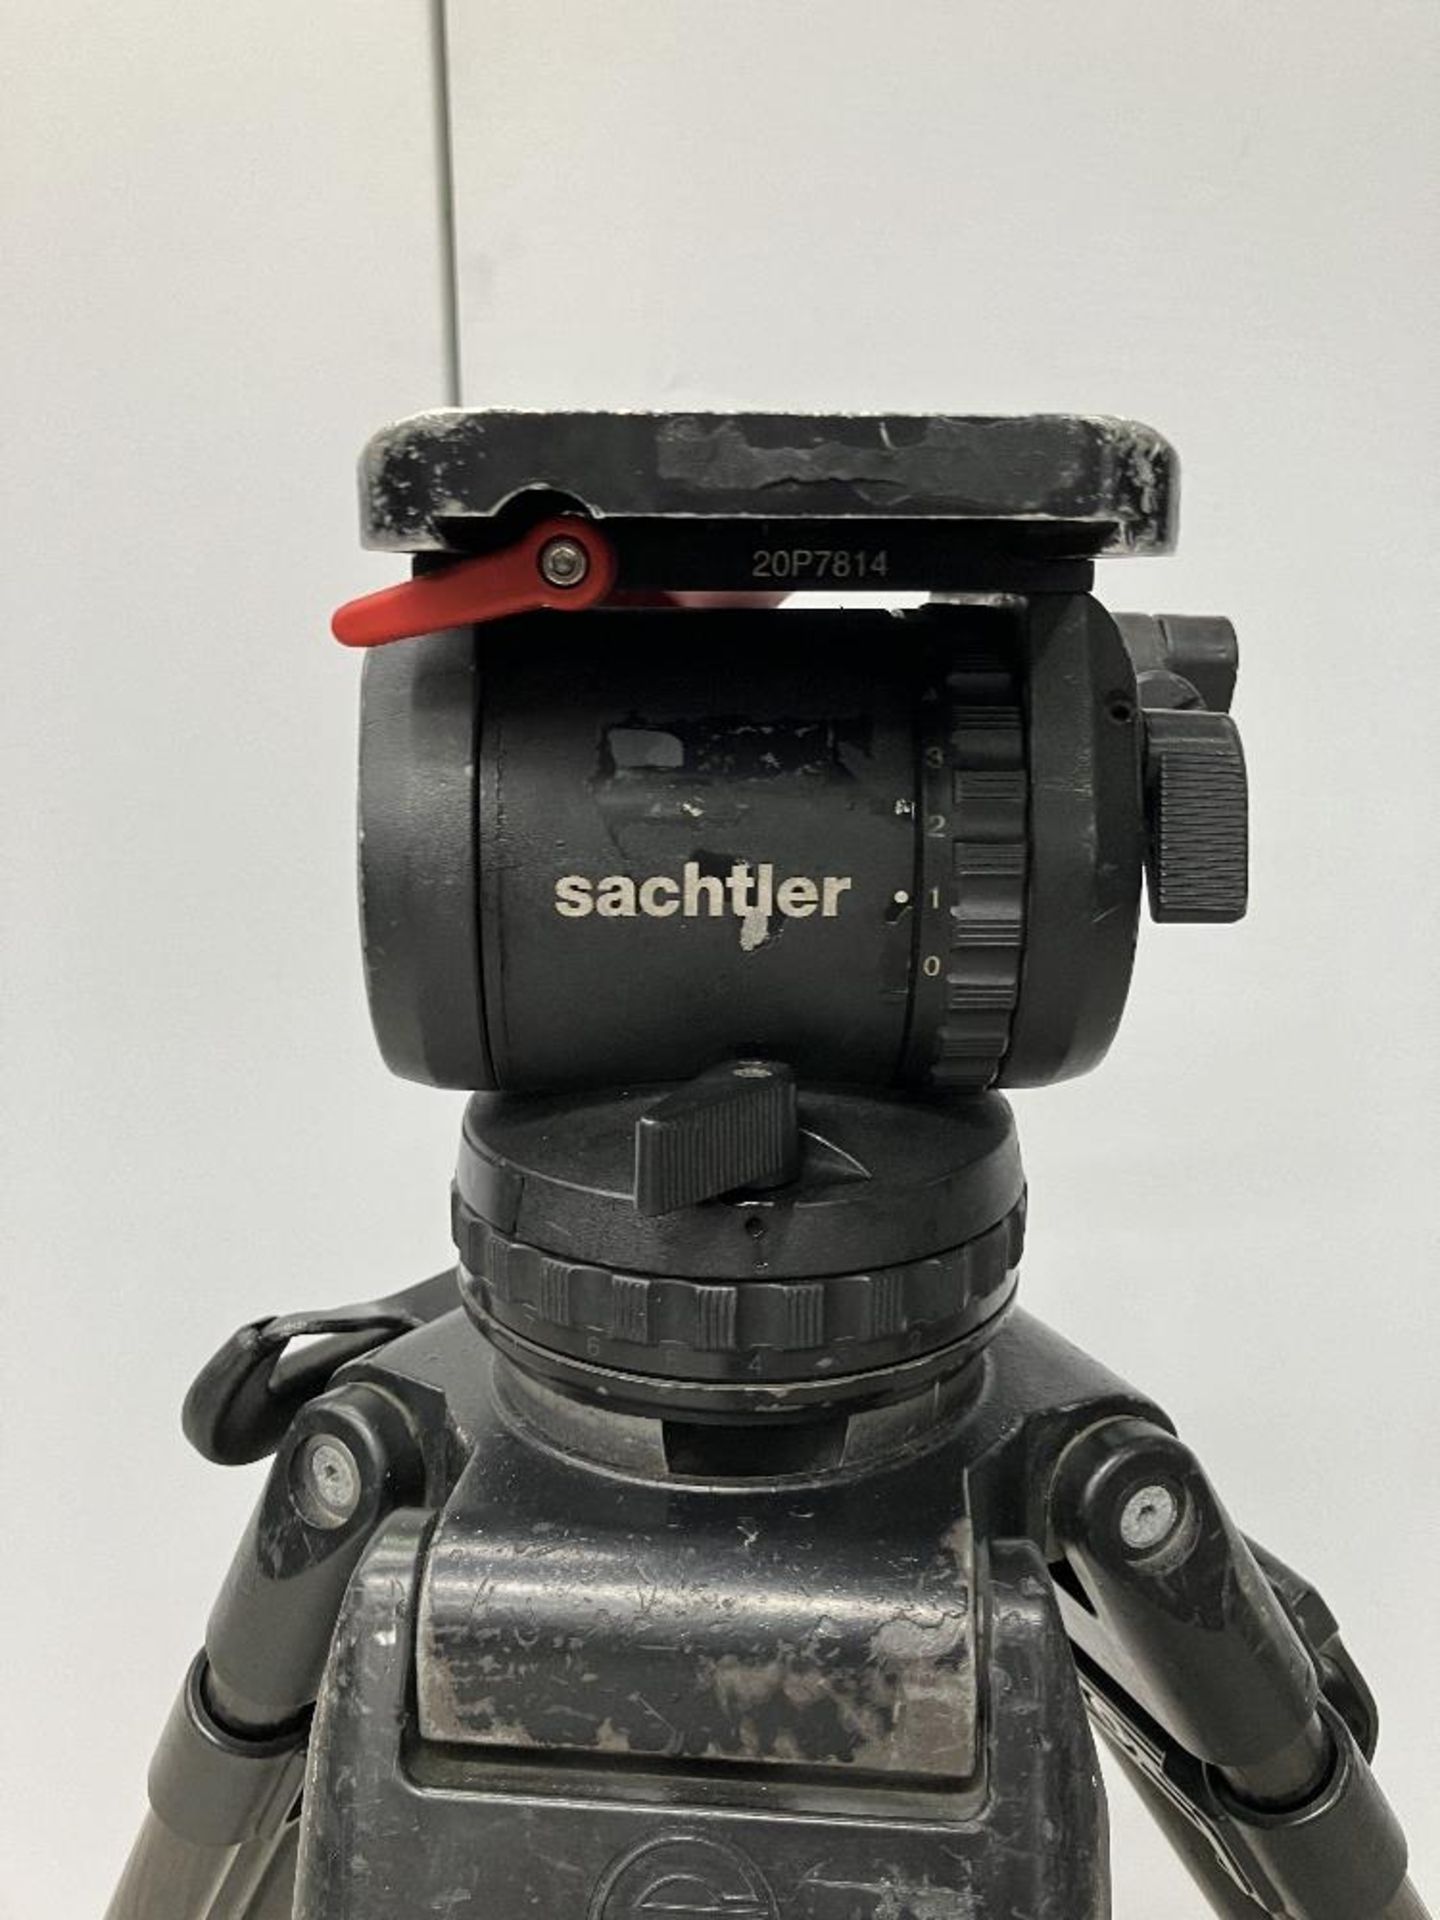 Sachtler 20P Fluid Tripod Head with Extendable Carbon Fibre Legs - Image 2 of 5